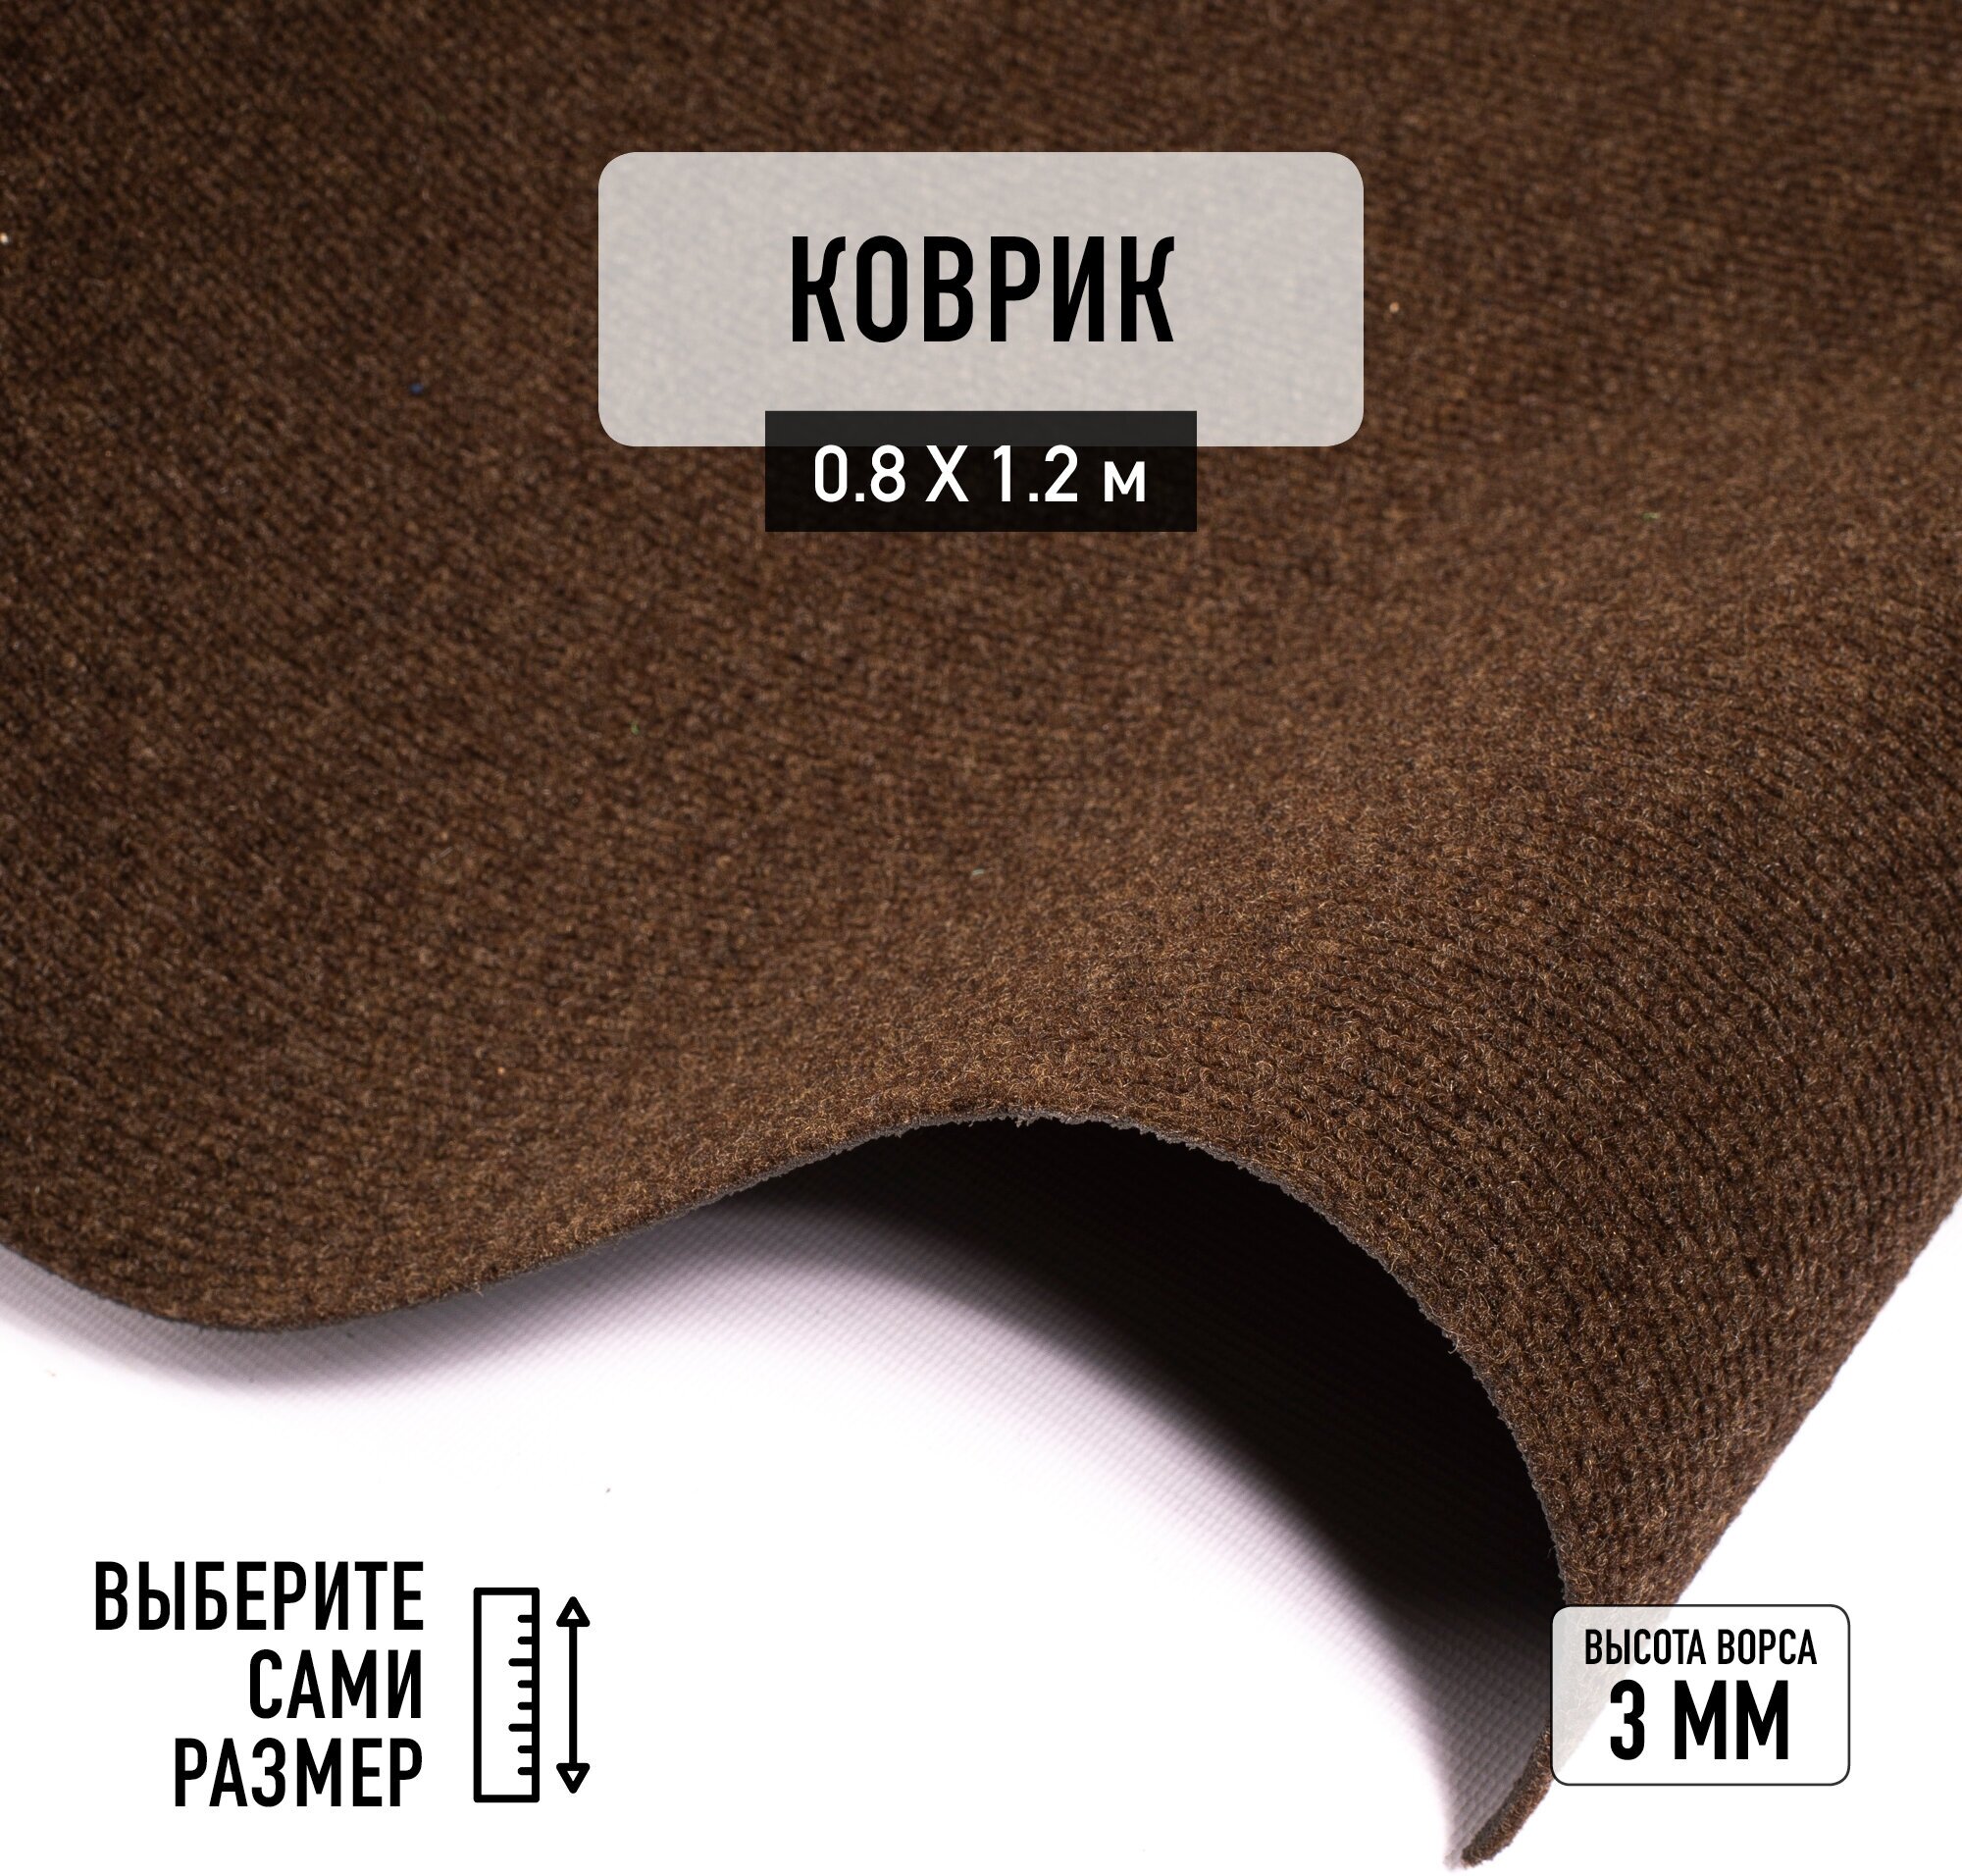 Иглопробивной коврик входной грязезащитный Betap "Dessert 93" на пол. Ковер коричневого цвета, размер 0,8х1,2м.